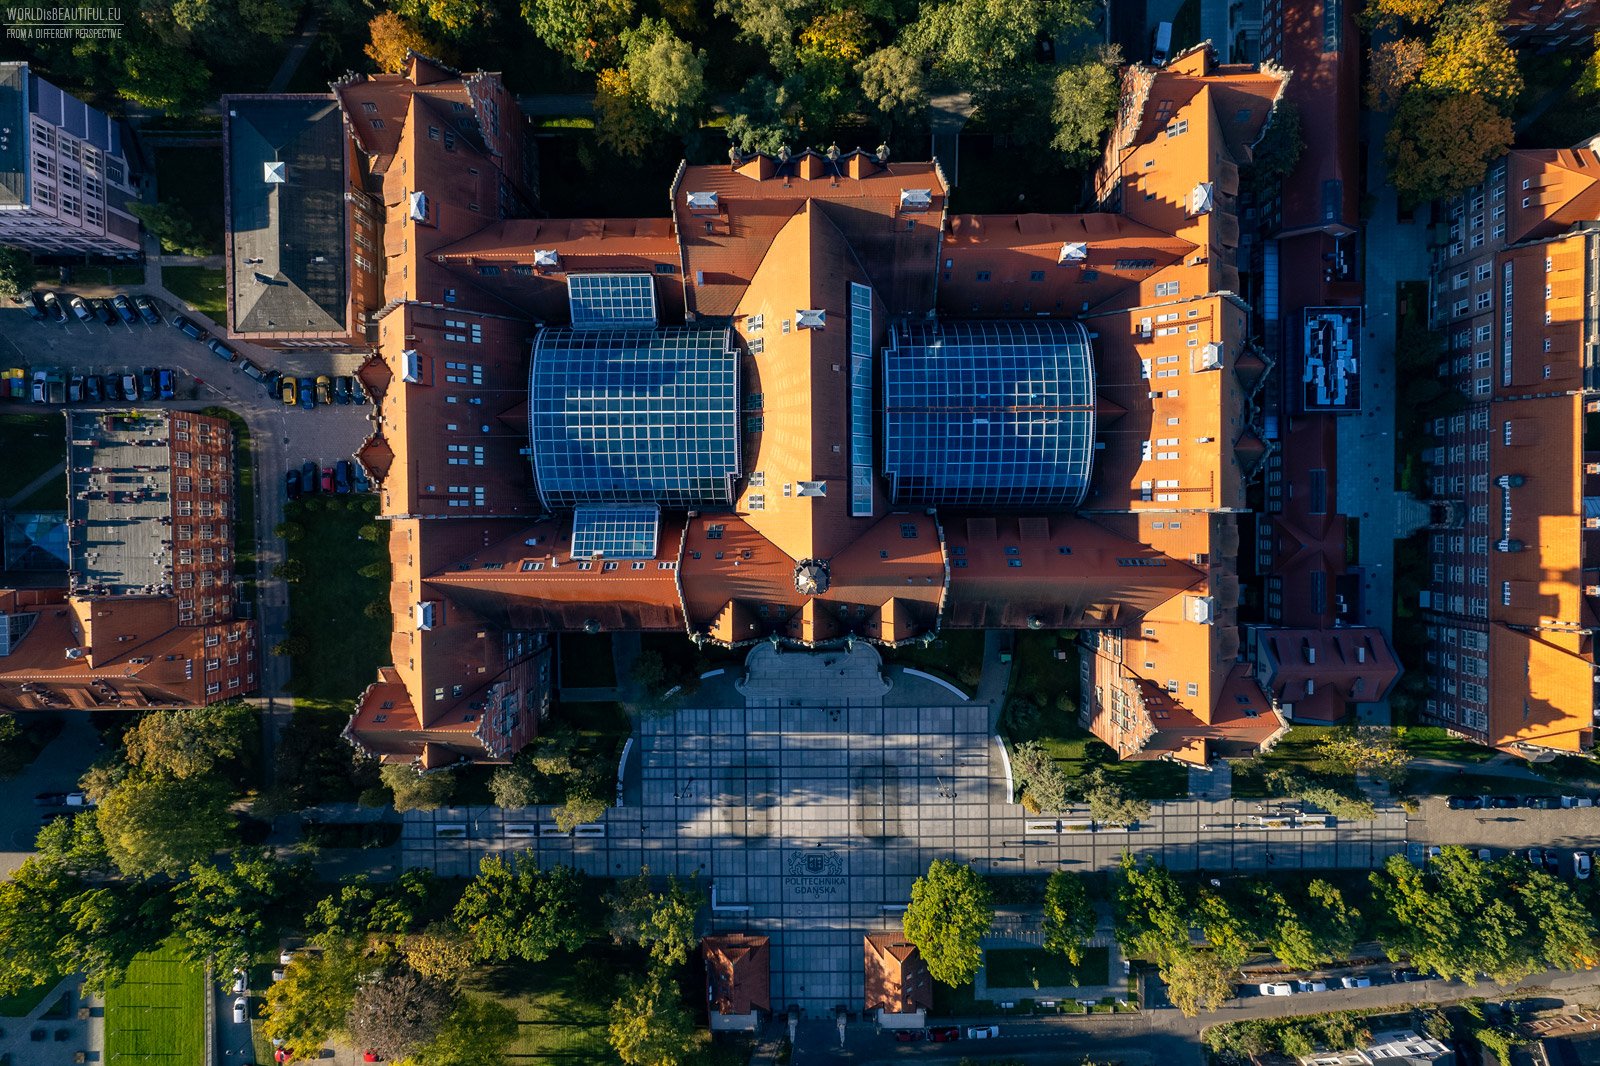 Gdańsk University of Technology from a bird's eye view